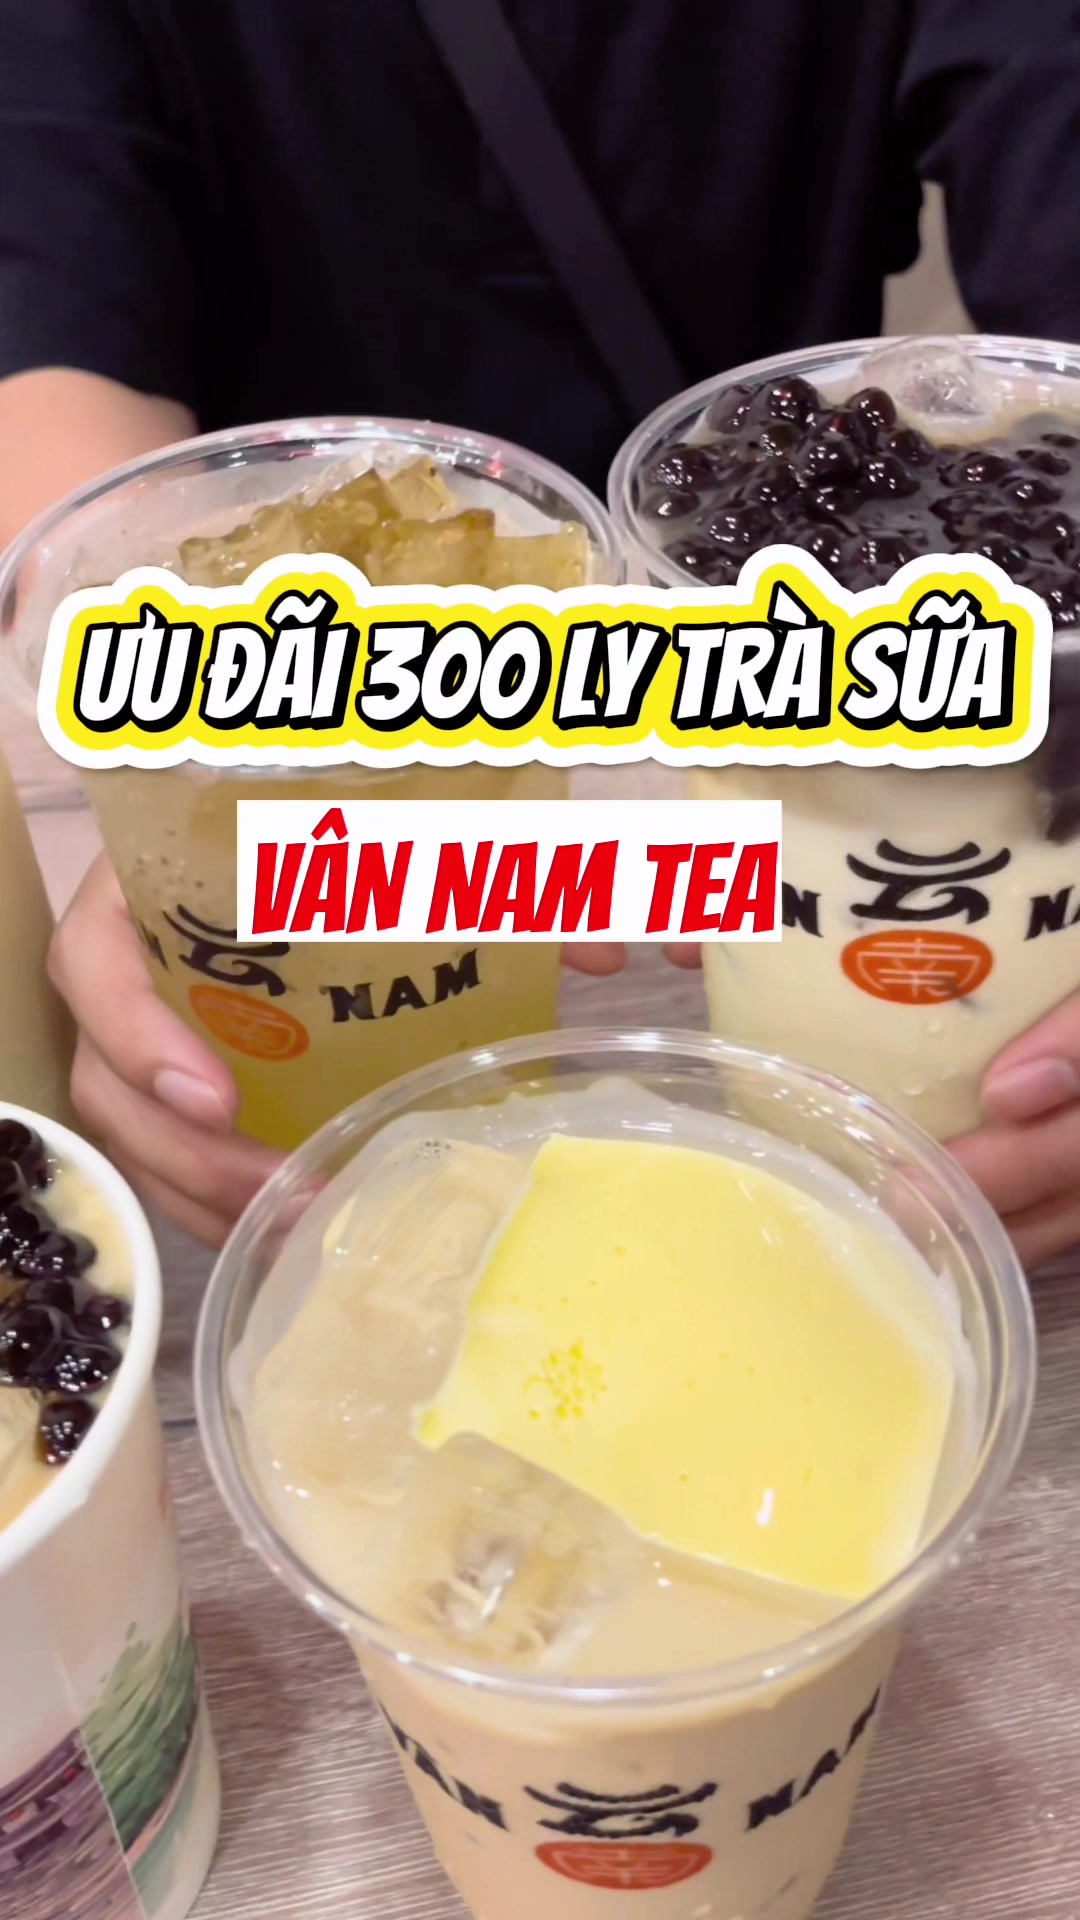 @Trà sữa Vân Nam, ưu đãi khủng đến tận 300 ly #vannamtea #mil...